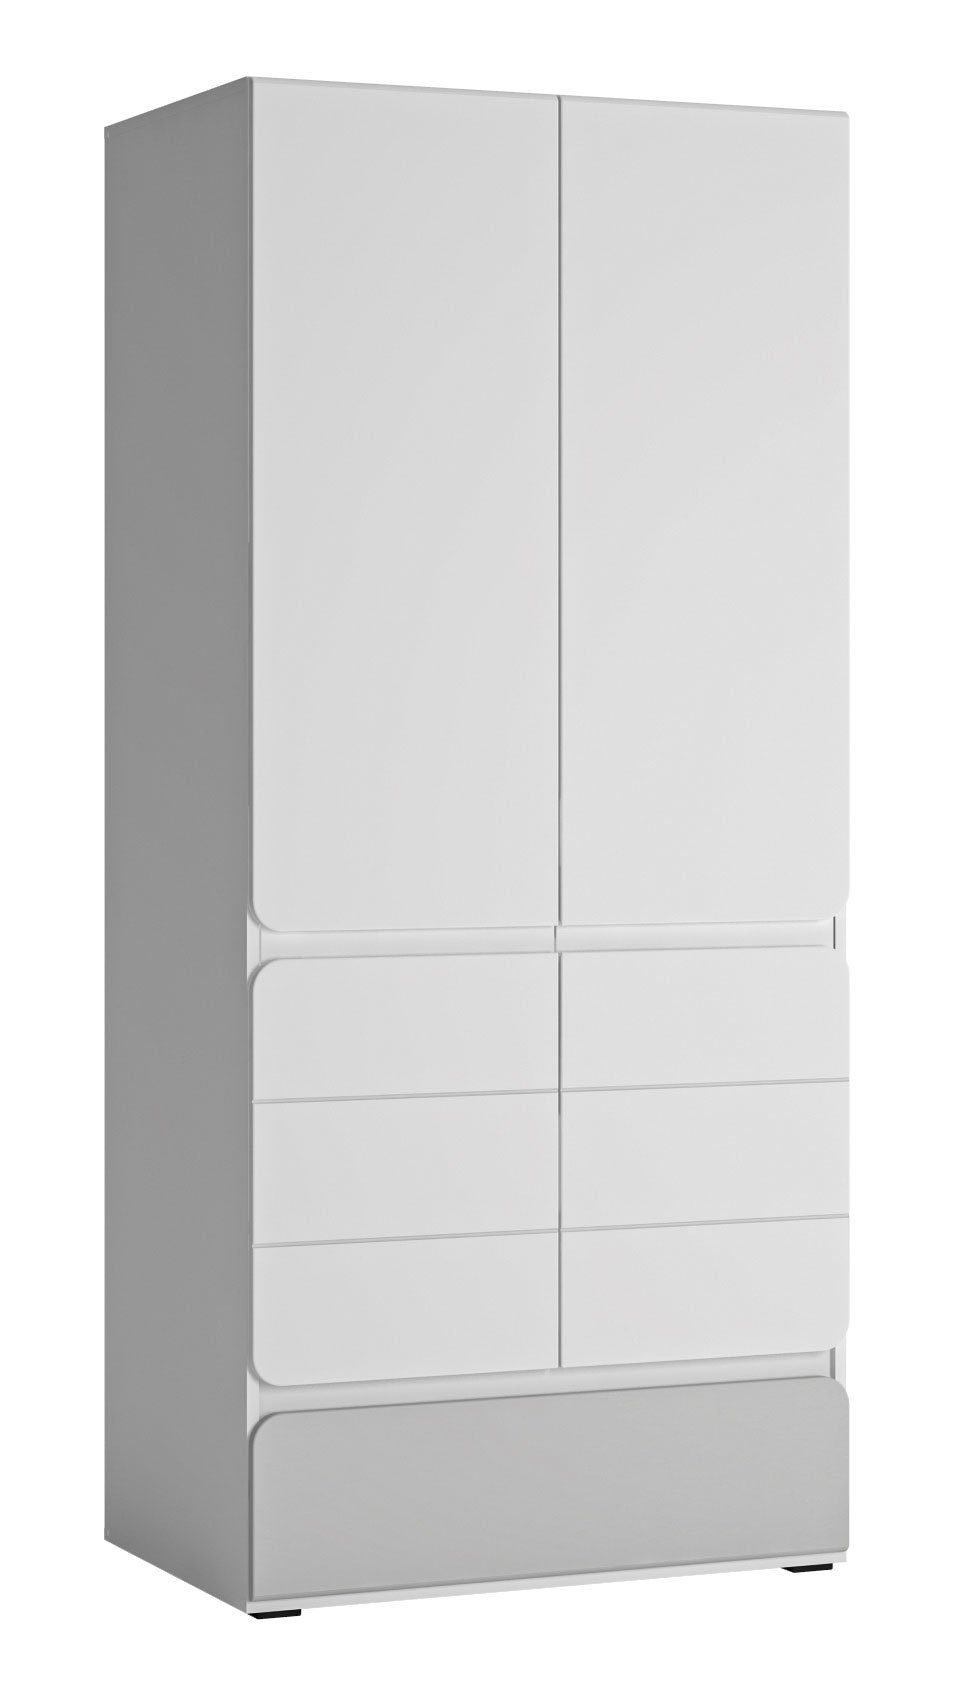 Feldmann-Wohnen Kleiderschrank Albi (Albi, Kleiderschrank) 84x59x193cm weiß grau Hochglanz